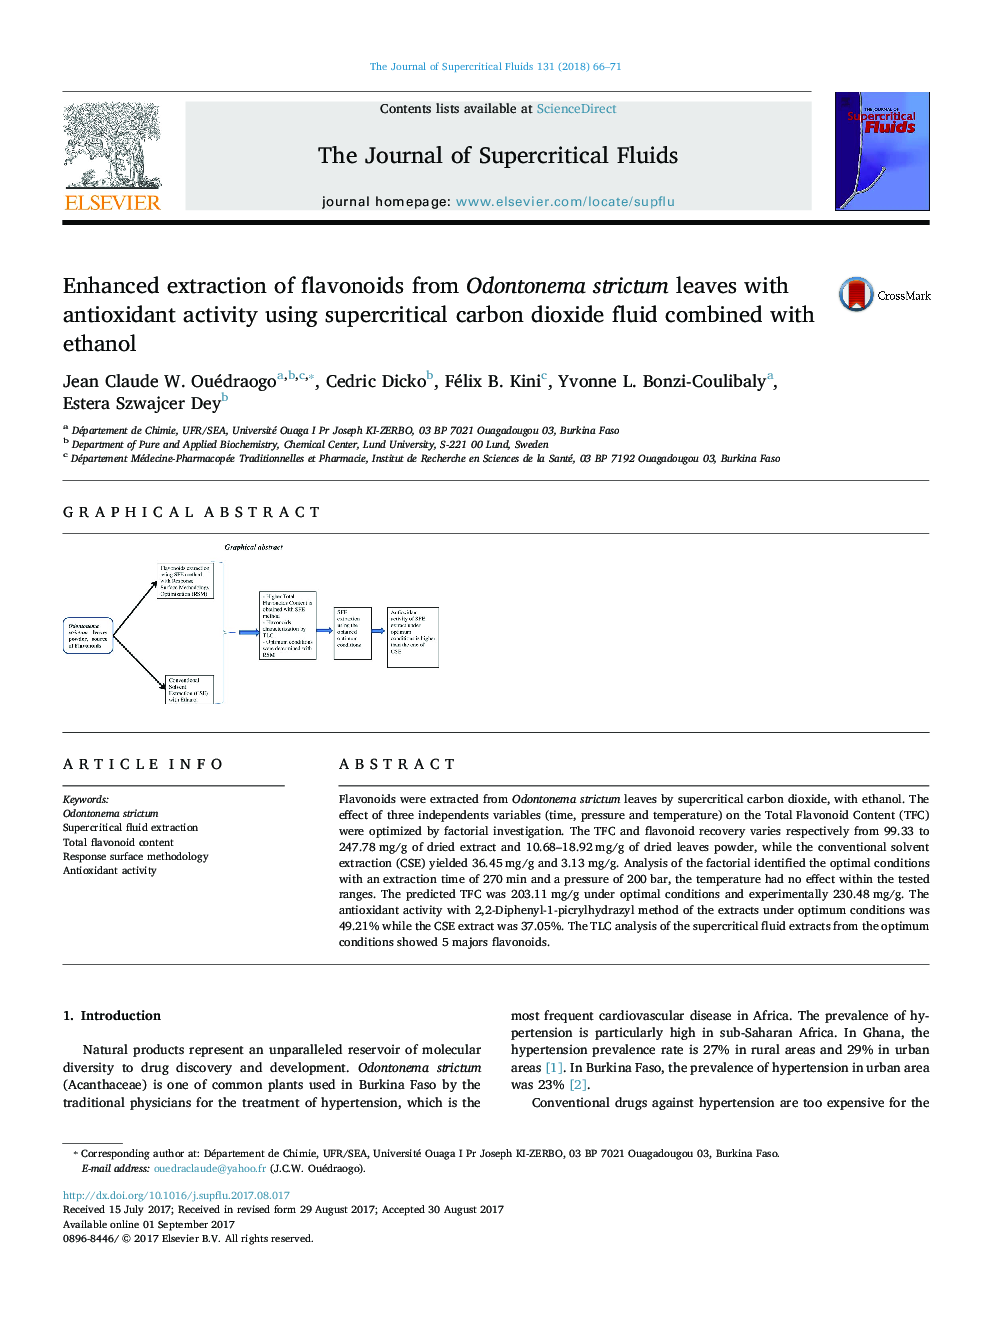 استخراج پیشرفته فلاونوئیدها از برگ Odontonema strictum با فعالیت آنتی اکسیدانی با استفاده از مایع دیاکسیدکربن فوق بحرانی همراه با اتانول